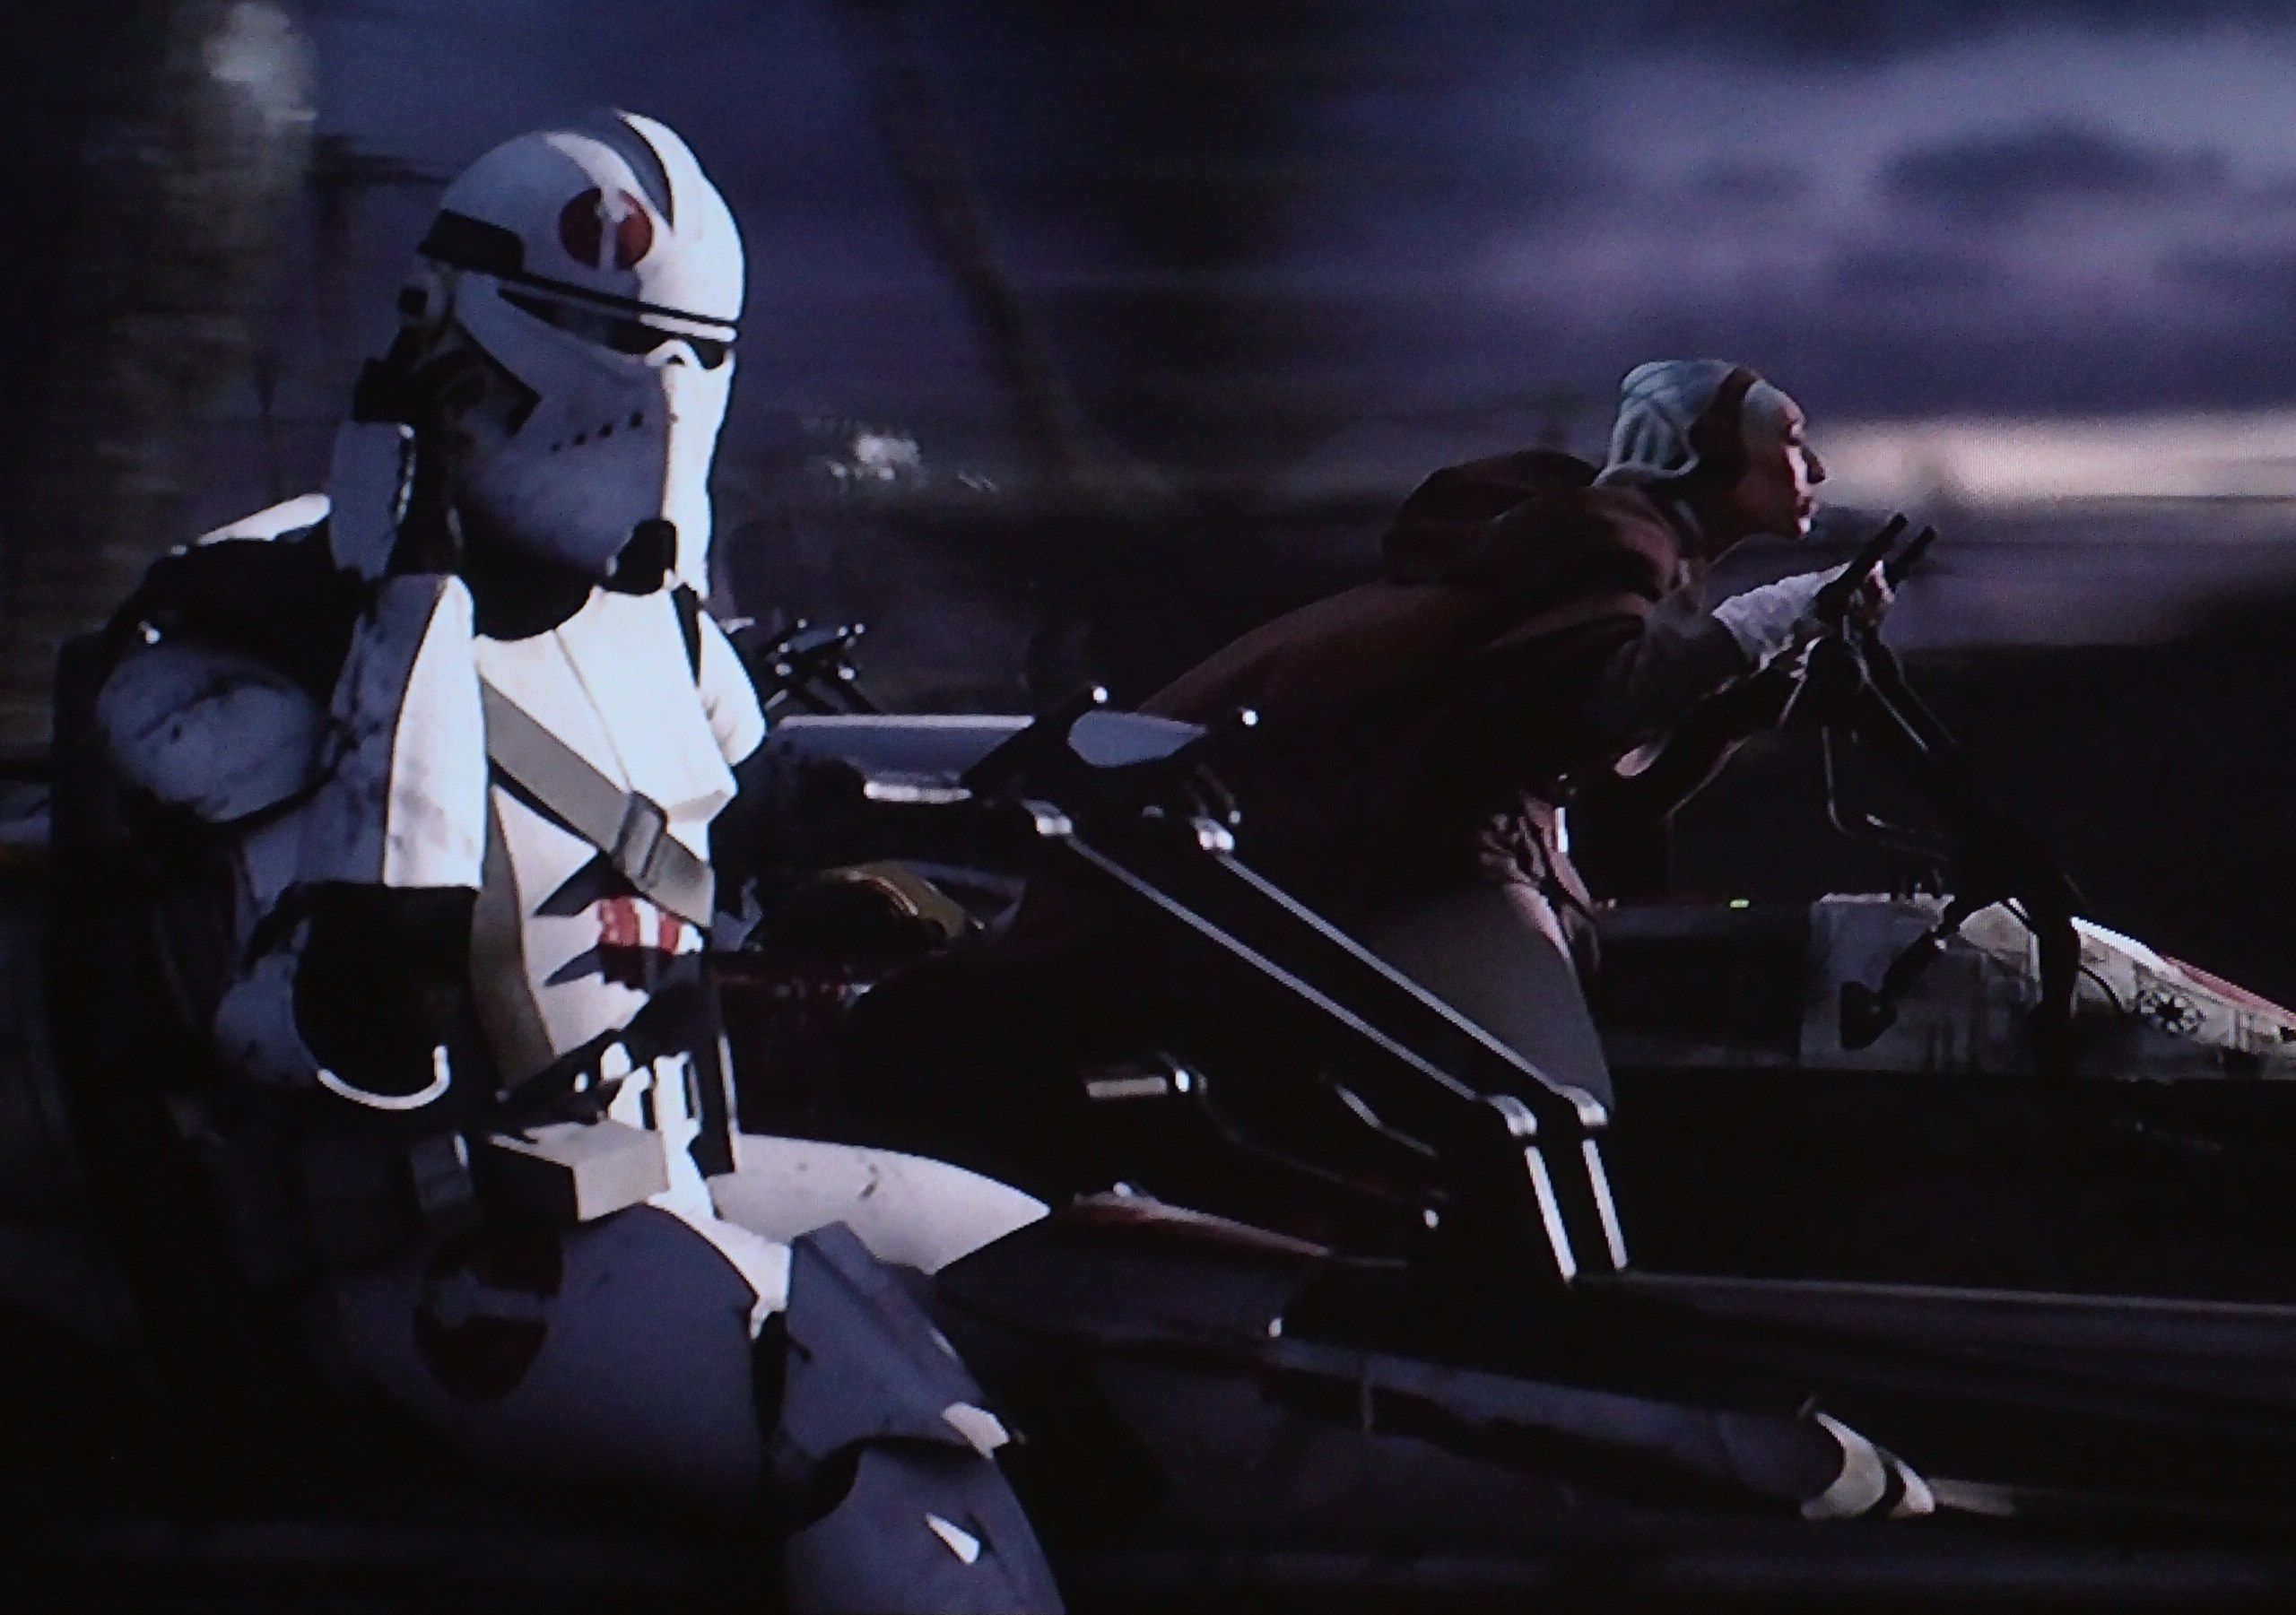 star wars clone trooper fond d'écran,équipement de protection individuelle,casque,personnage fictif,capture d'écran,véhicule